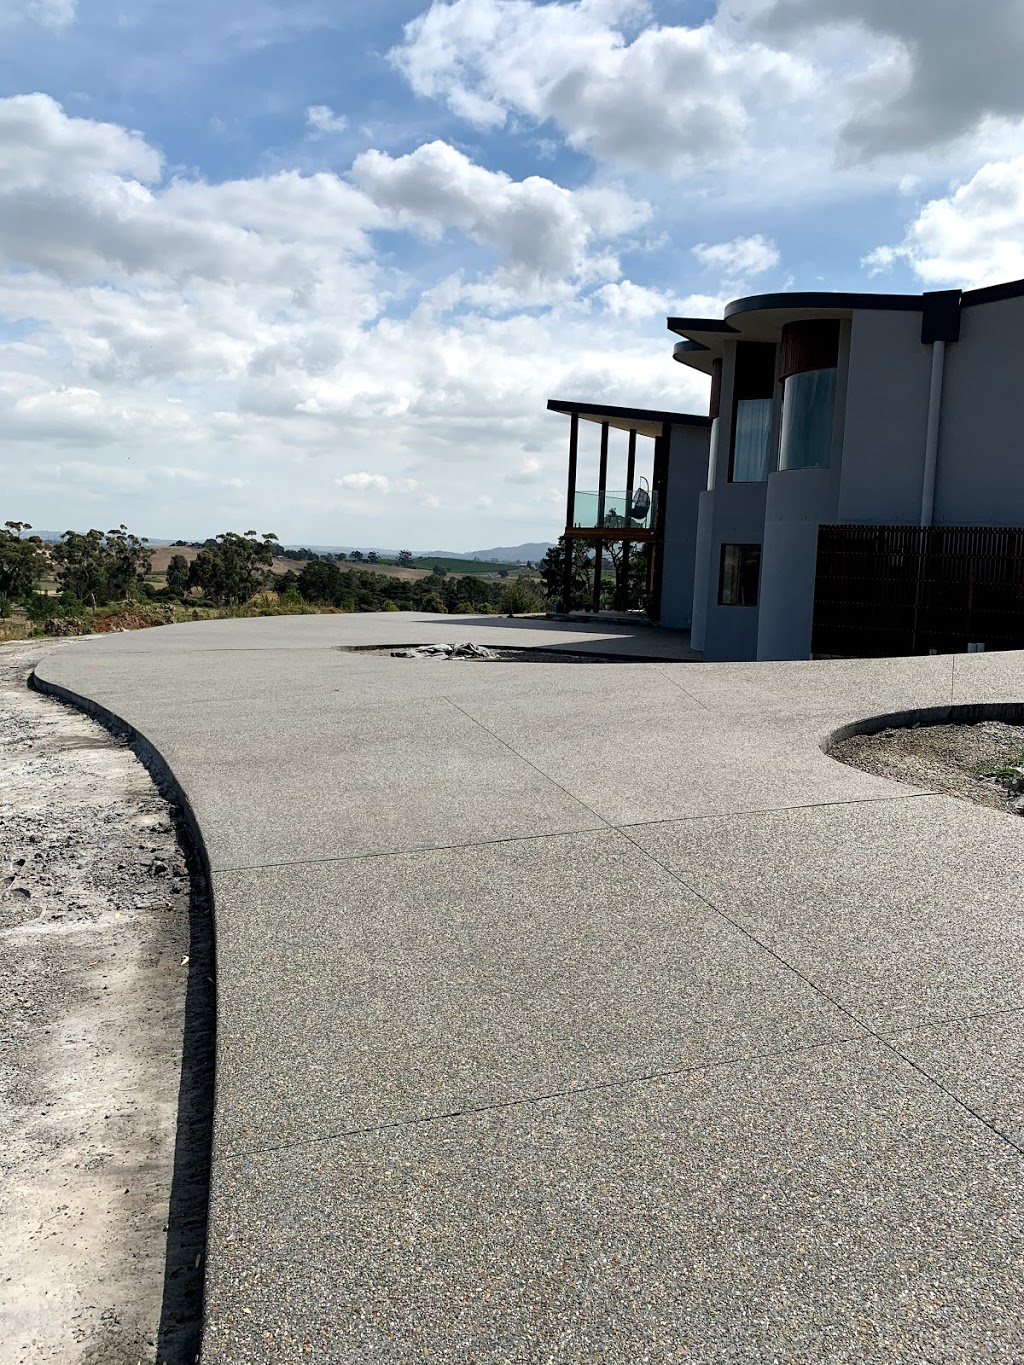 Abreeze Concreting | 11 Stanley St, Chirnside Park VIC 3116, Australia | Phone: 0413 349 561